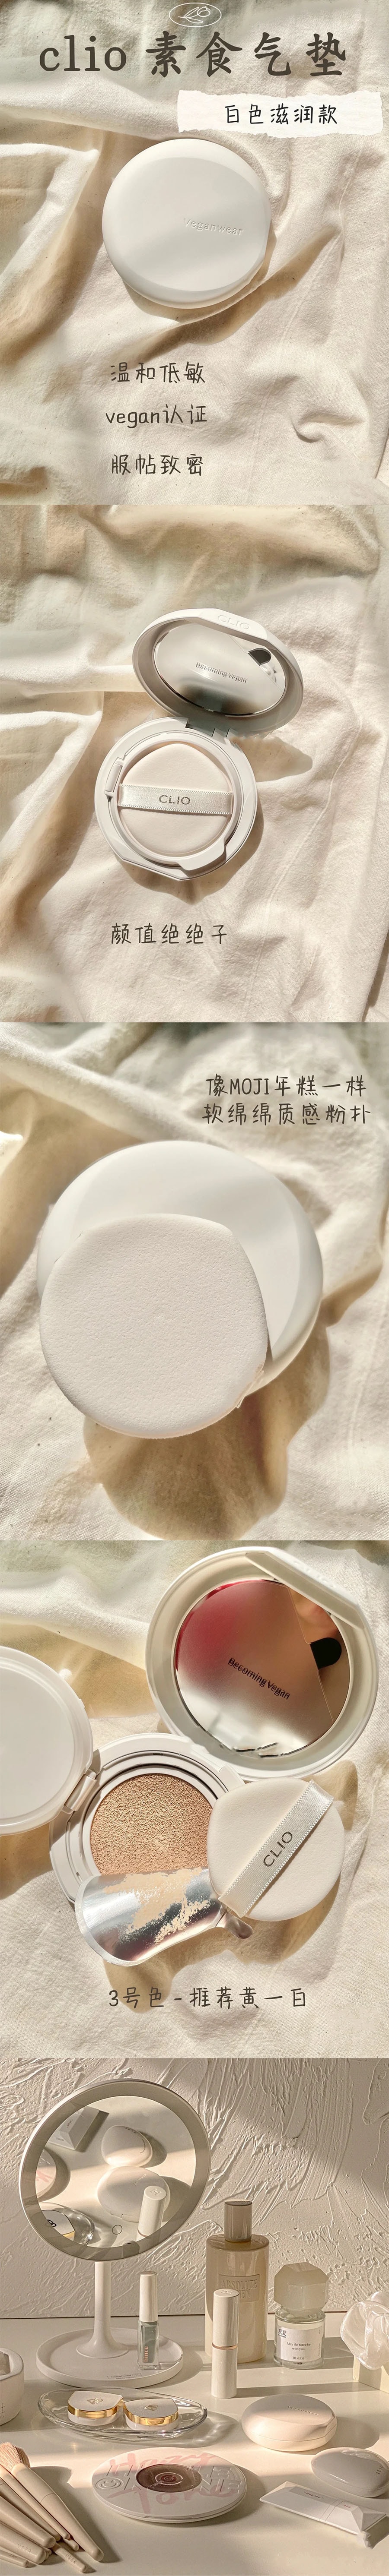 韓國 CLIO 珂萊歐 新款Veganwear素食主義水光氣墊 #02 亮白色 15g*2 含替換芯